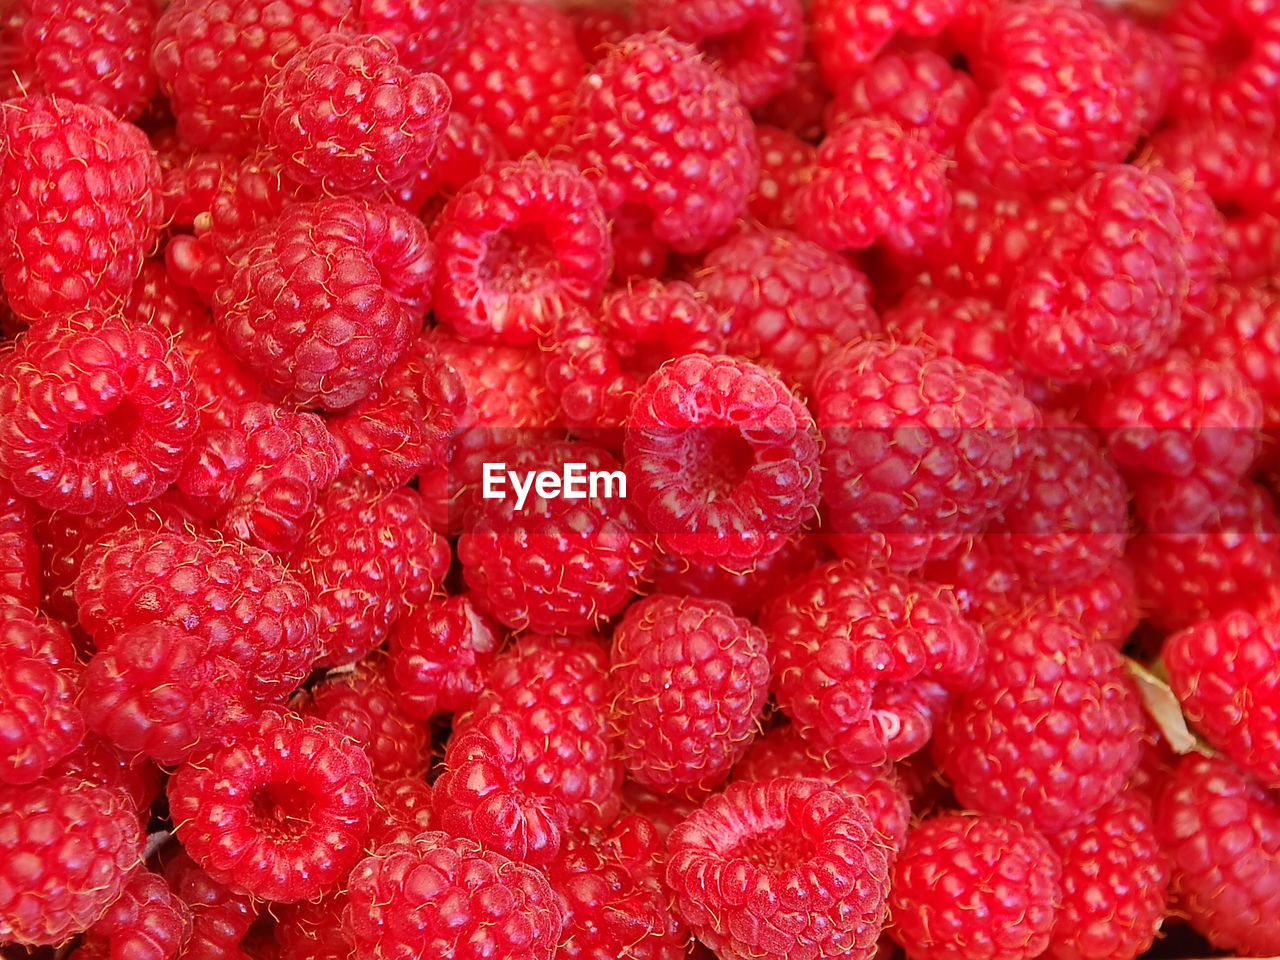 Background of ripe juicy raspberries